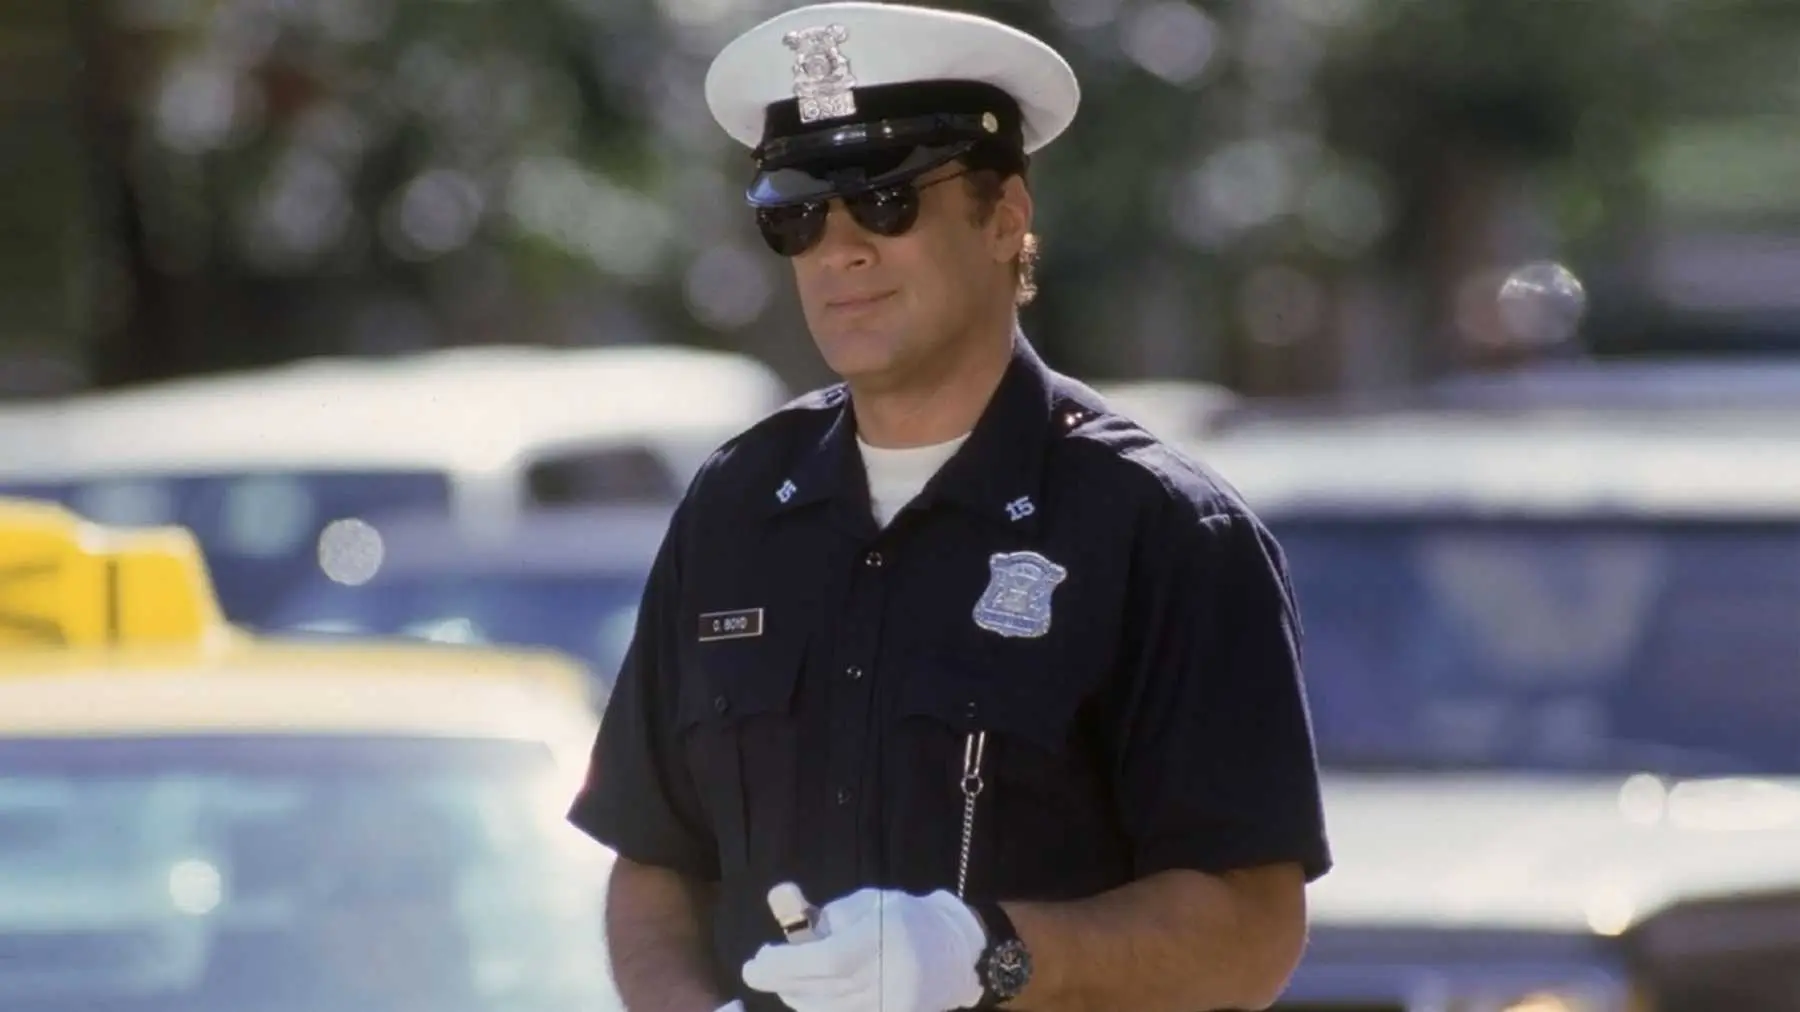 Lovec policajtů, Steven Seagal